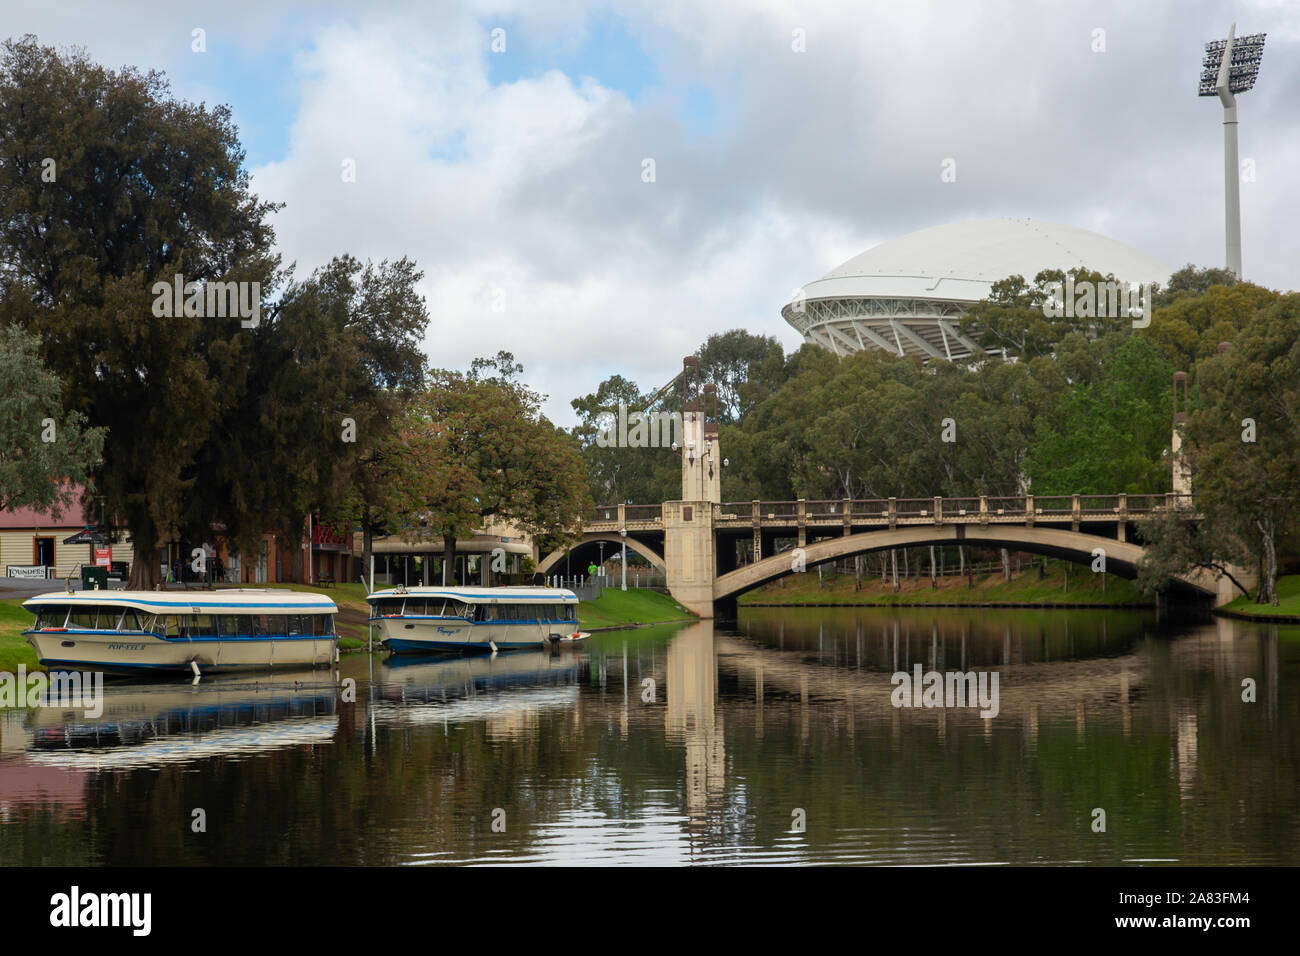 Der Fluss Torrens mit Popeye Fluss Boote und der legendäre Adelaide Oval im Hintergrund Am 16. Oktober 2019 Stockfoto